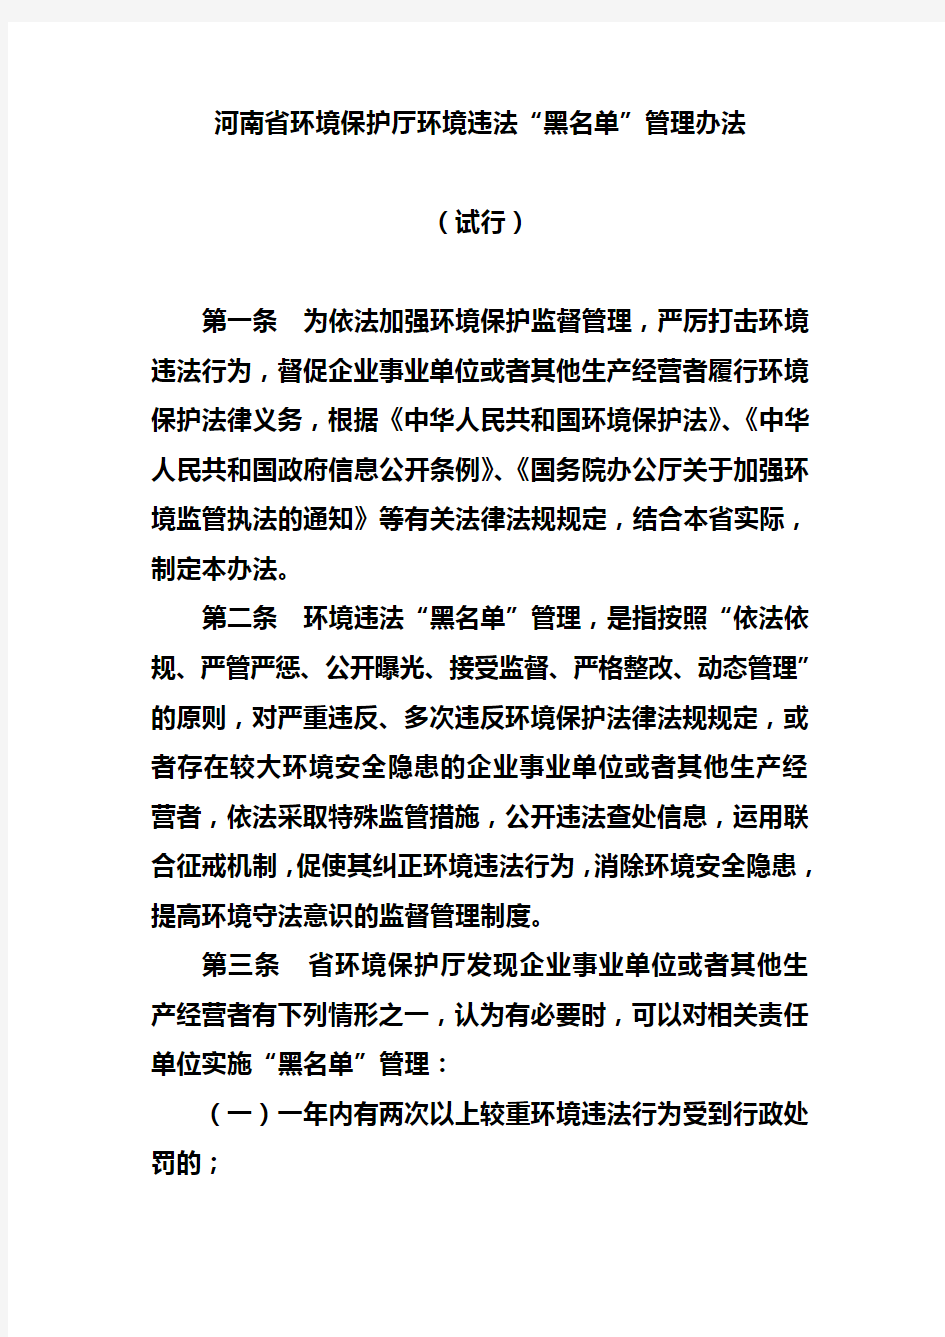 河南省环境保护厅环境违法“黑名单”管理办法